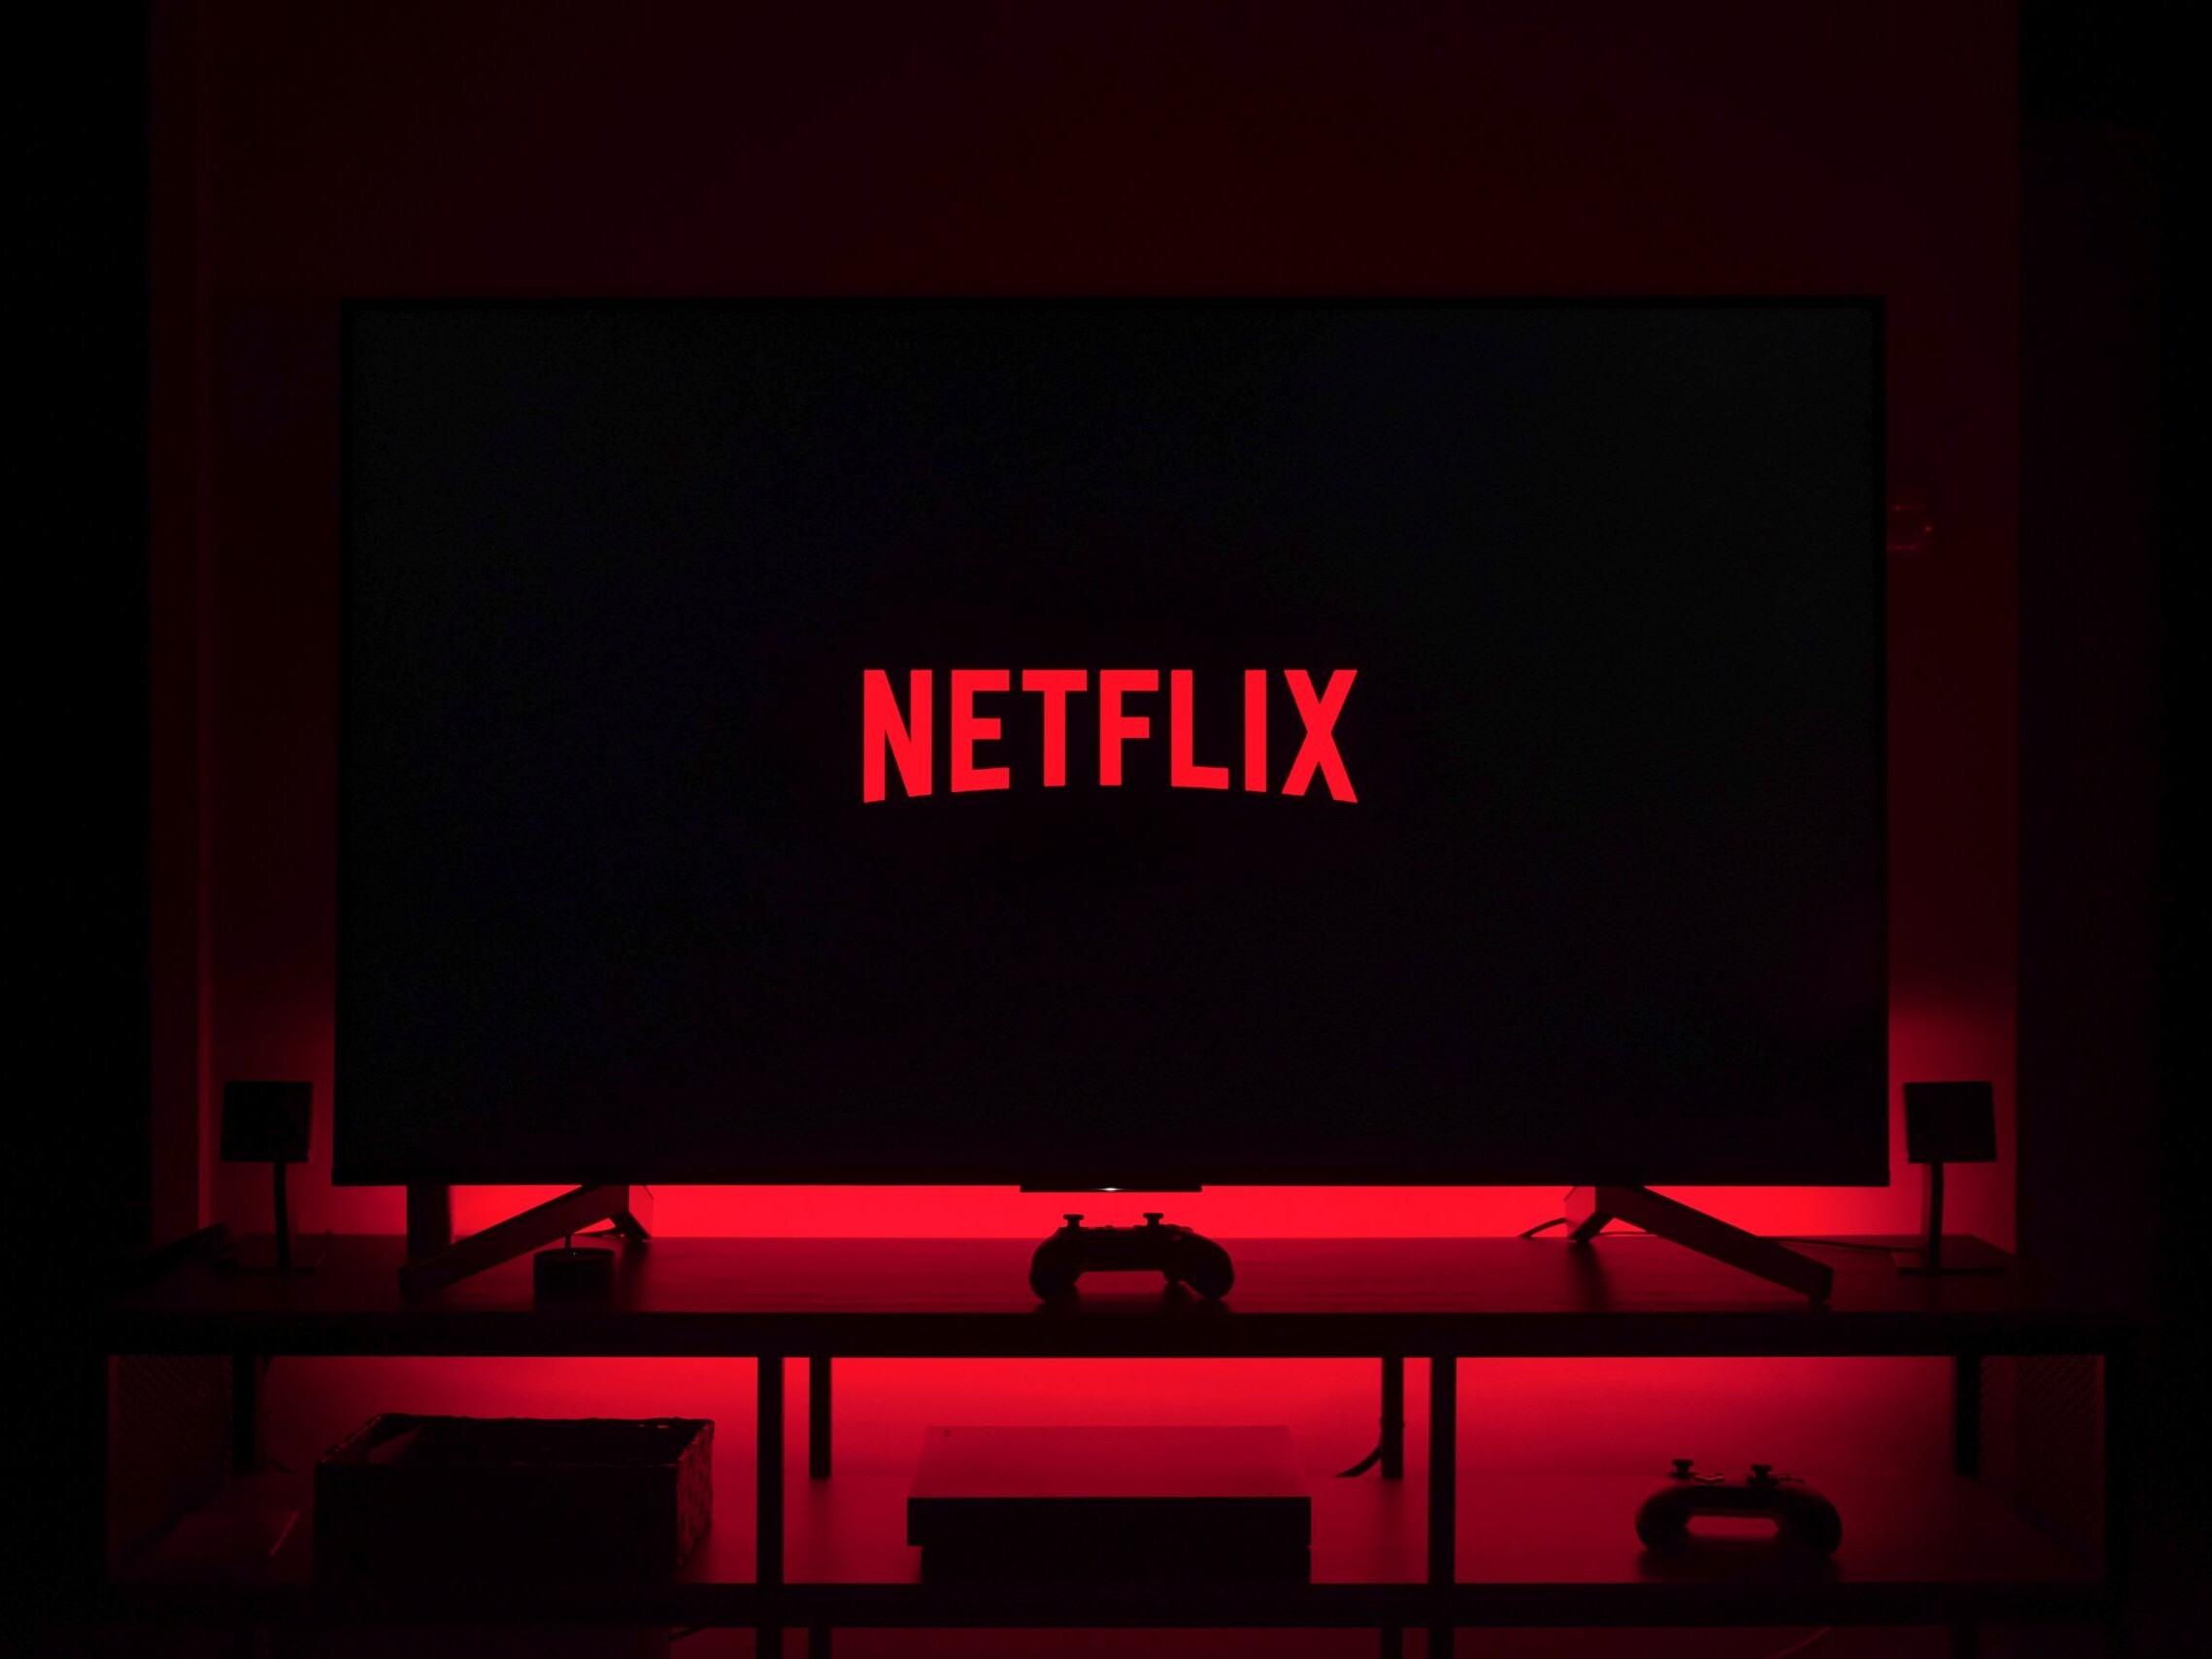 Netflix on a TV